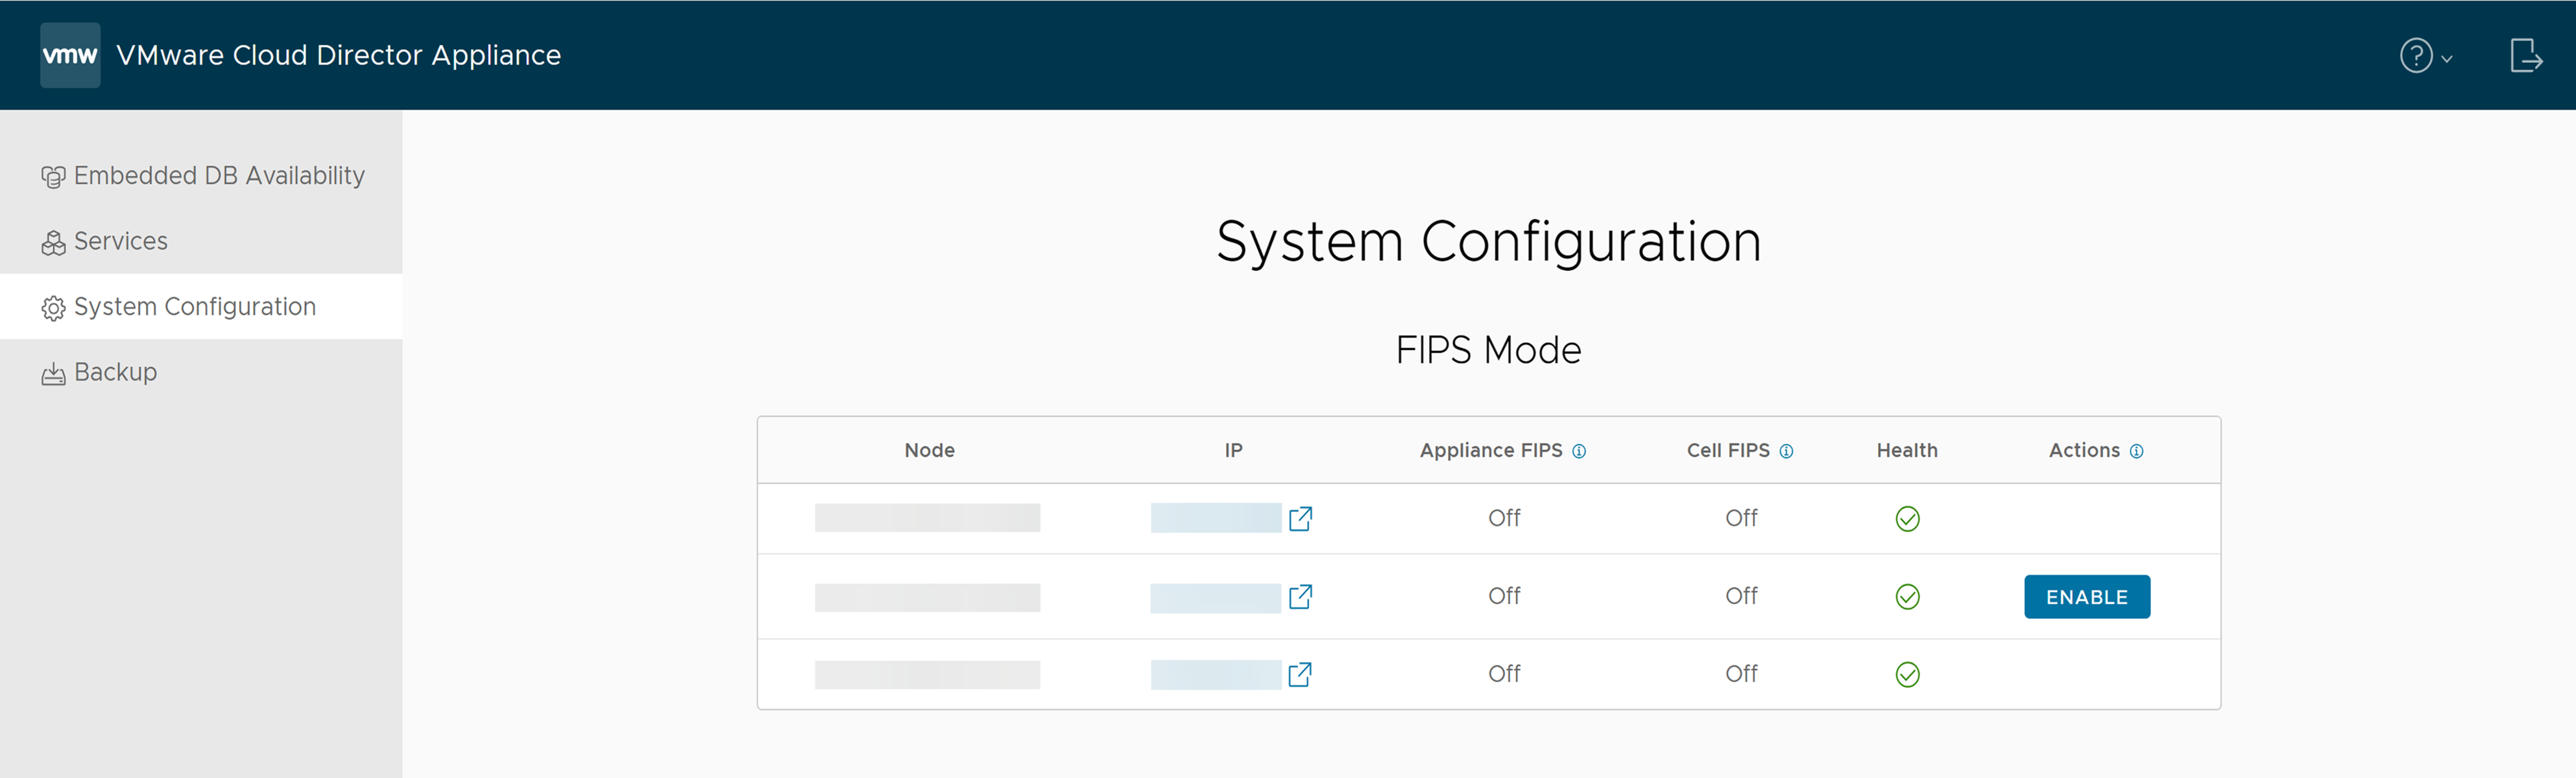 VMware Cloud Director のアプライアンス管理ユーザー インターフェイスの [システム構成] タブで、FIPS モードの情報を確認できます。